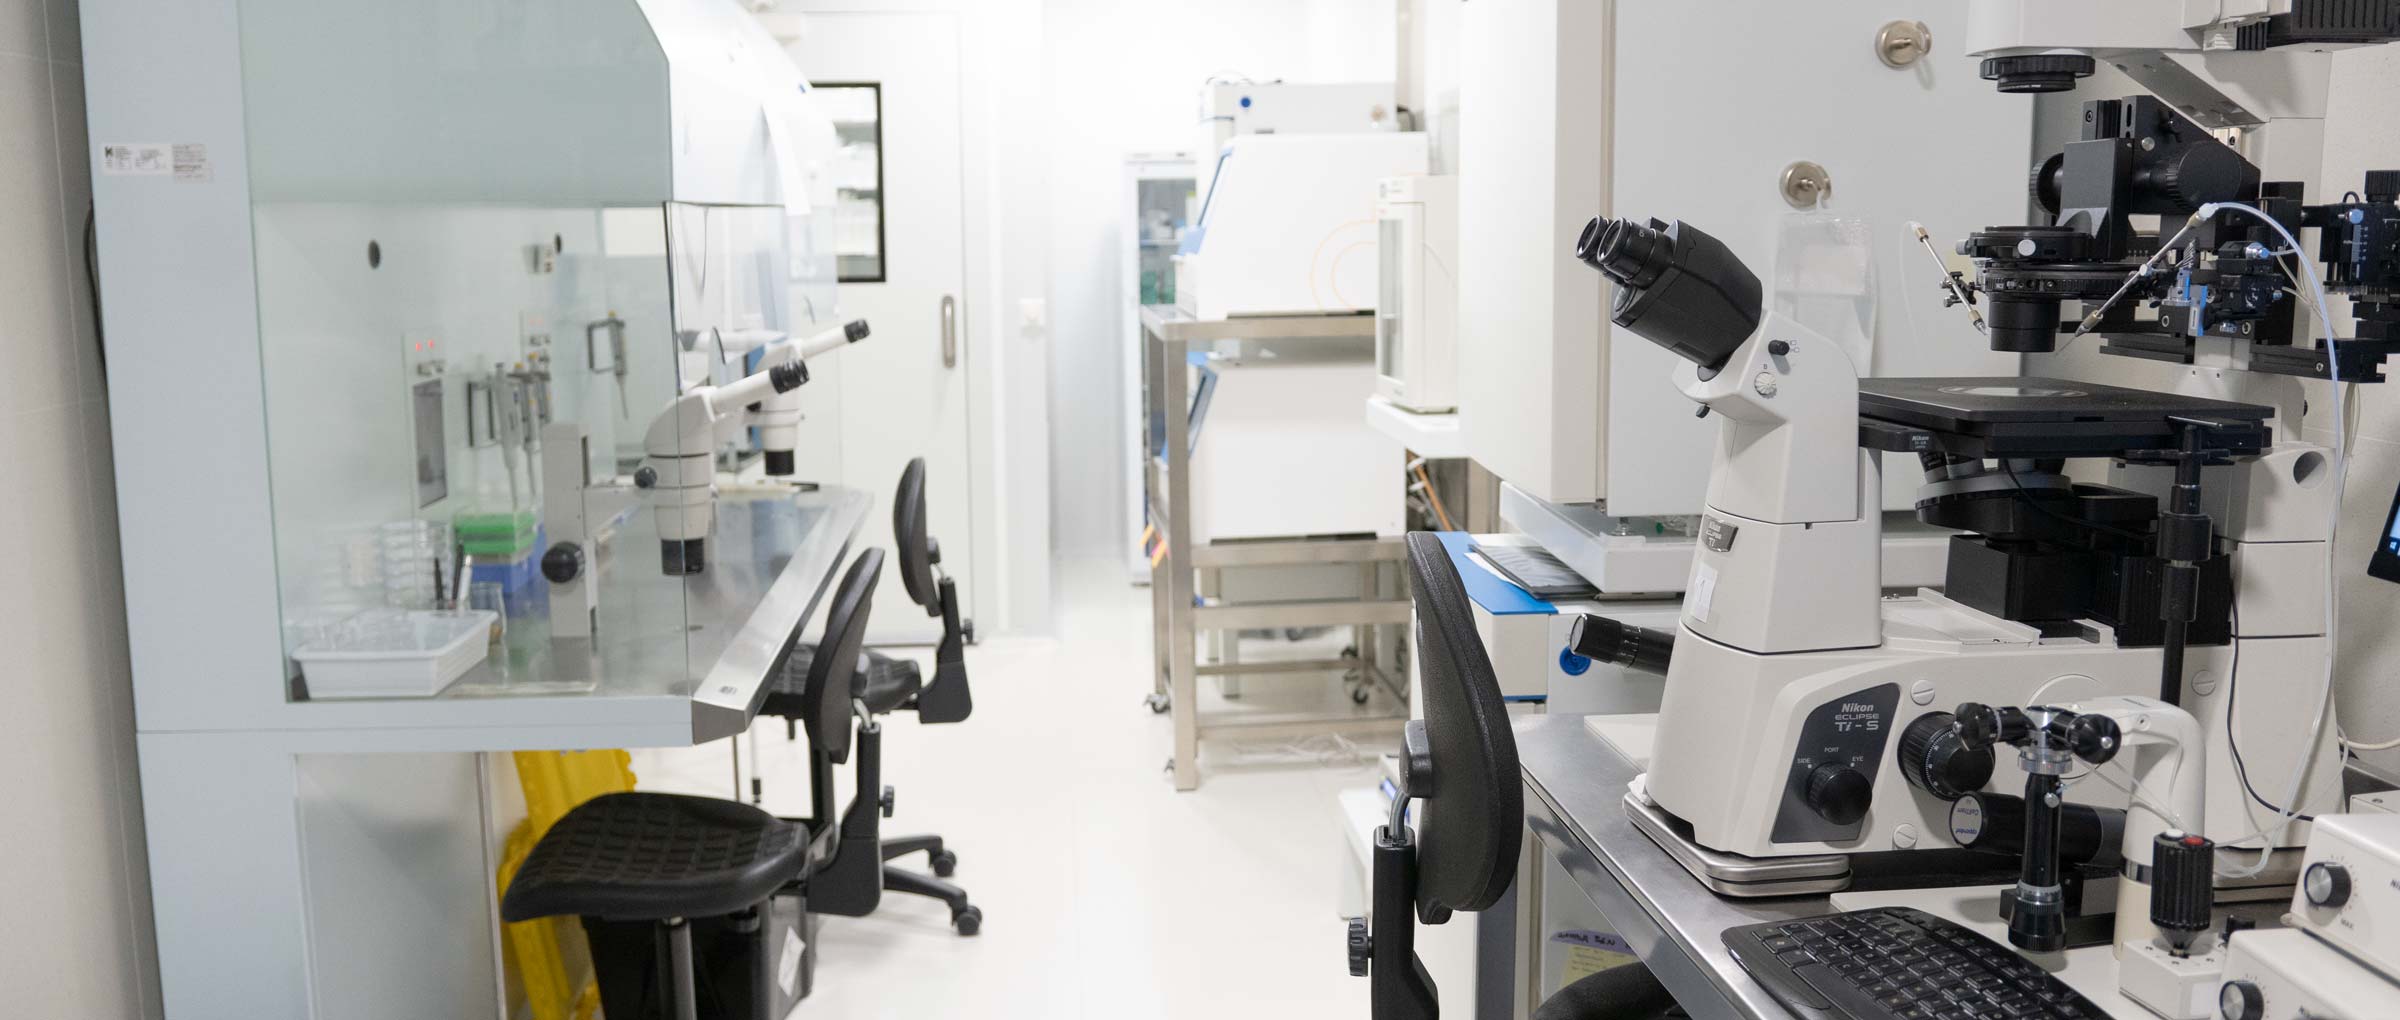 Laboratory of IVF Spain Madrid